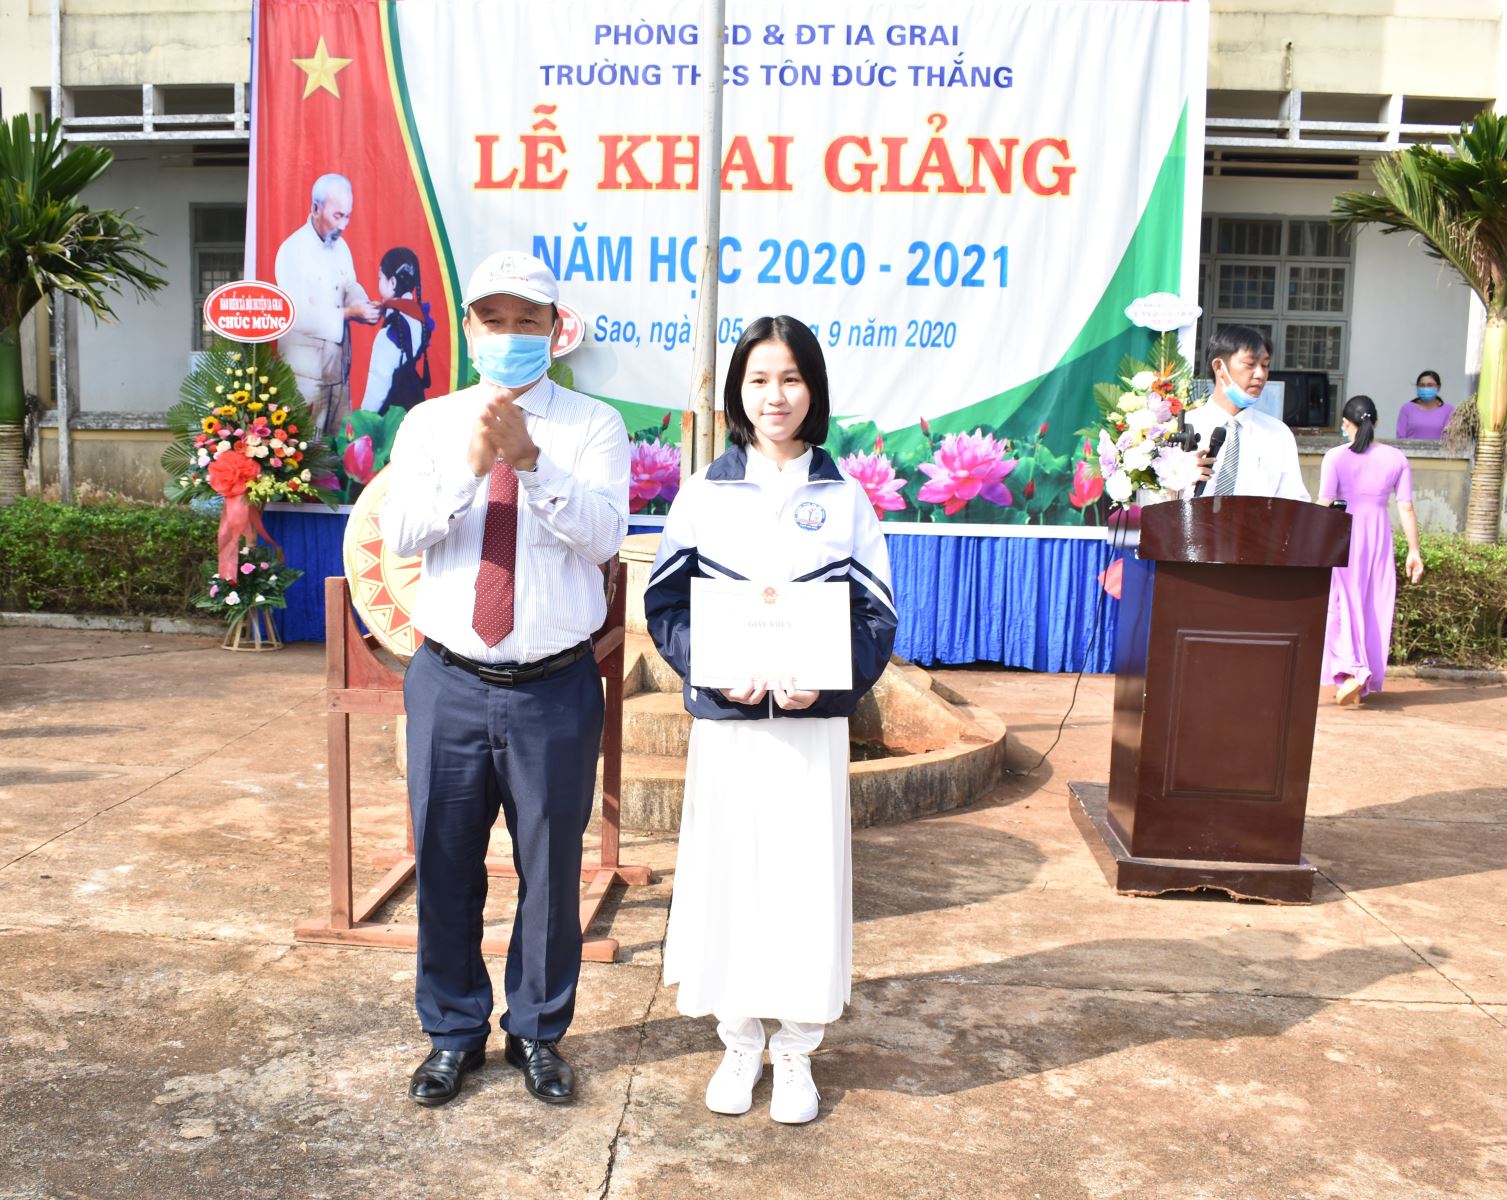 Article Đồng chí Dương Mah Tiệp- Bí thư Huyện ủy dự khai giảng tại trường THCS Tôn Đức Thắng